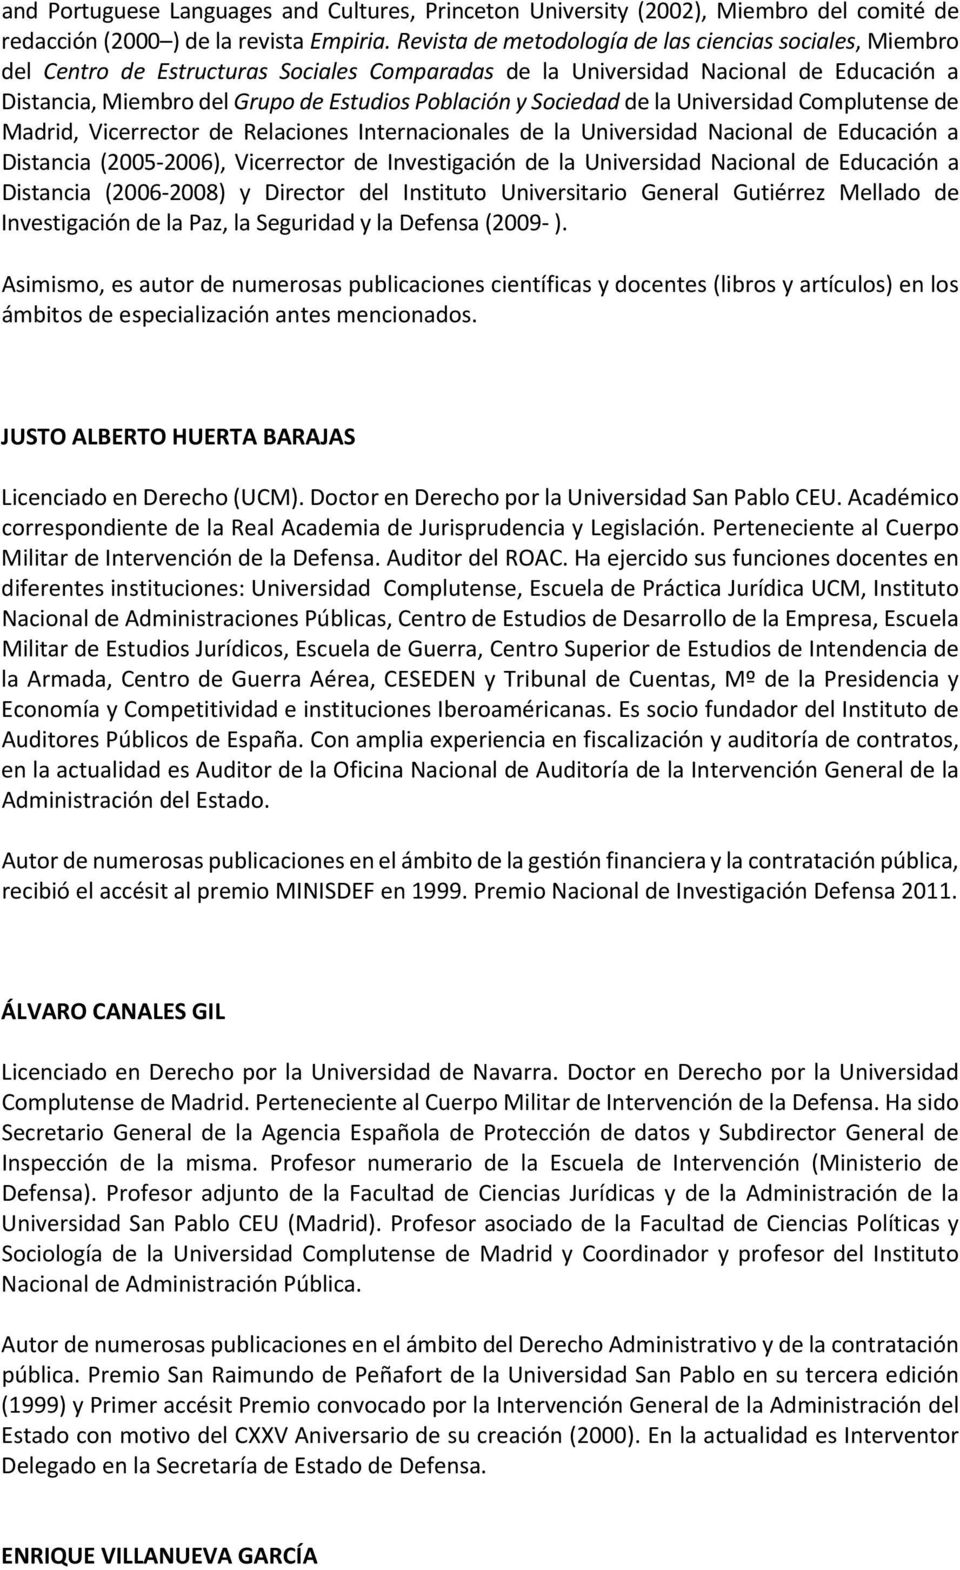 Sociedad de la Universidad Complutense de Madrid, Vicerrector de Relaciones Internacionales de la Universidad Nacional de Educación a Distancia (2005 2006), Vicerrector de Investigación de la